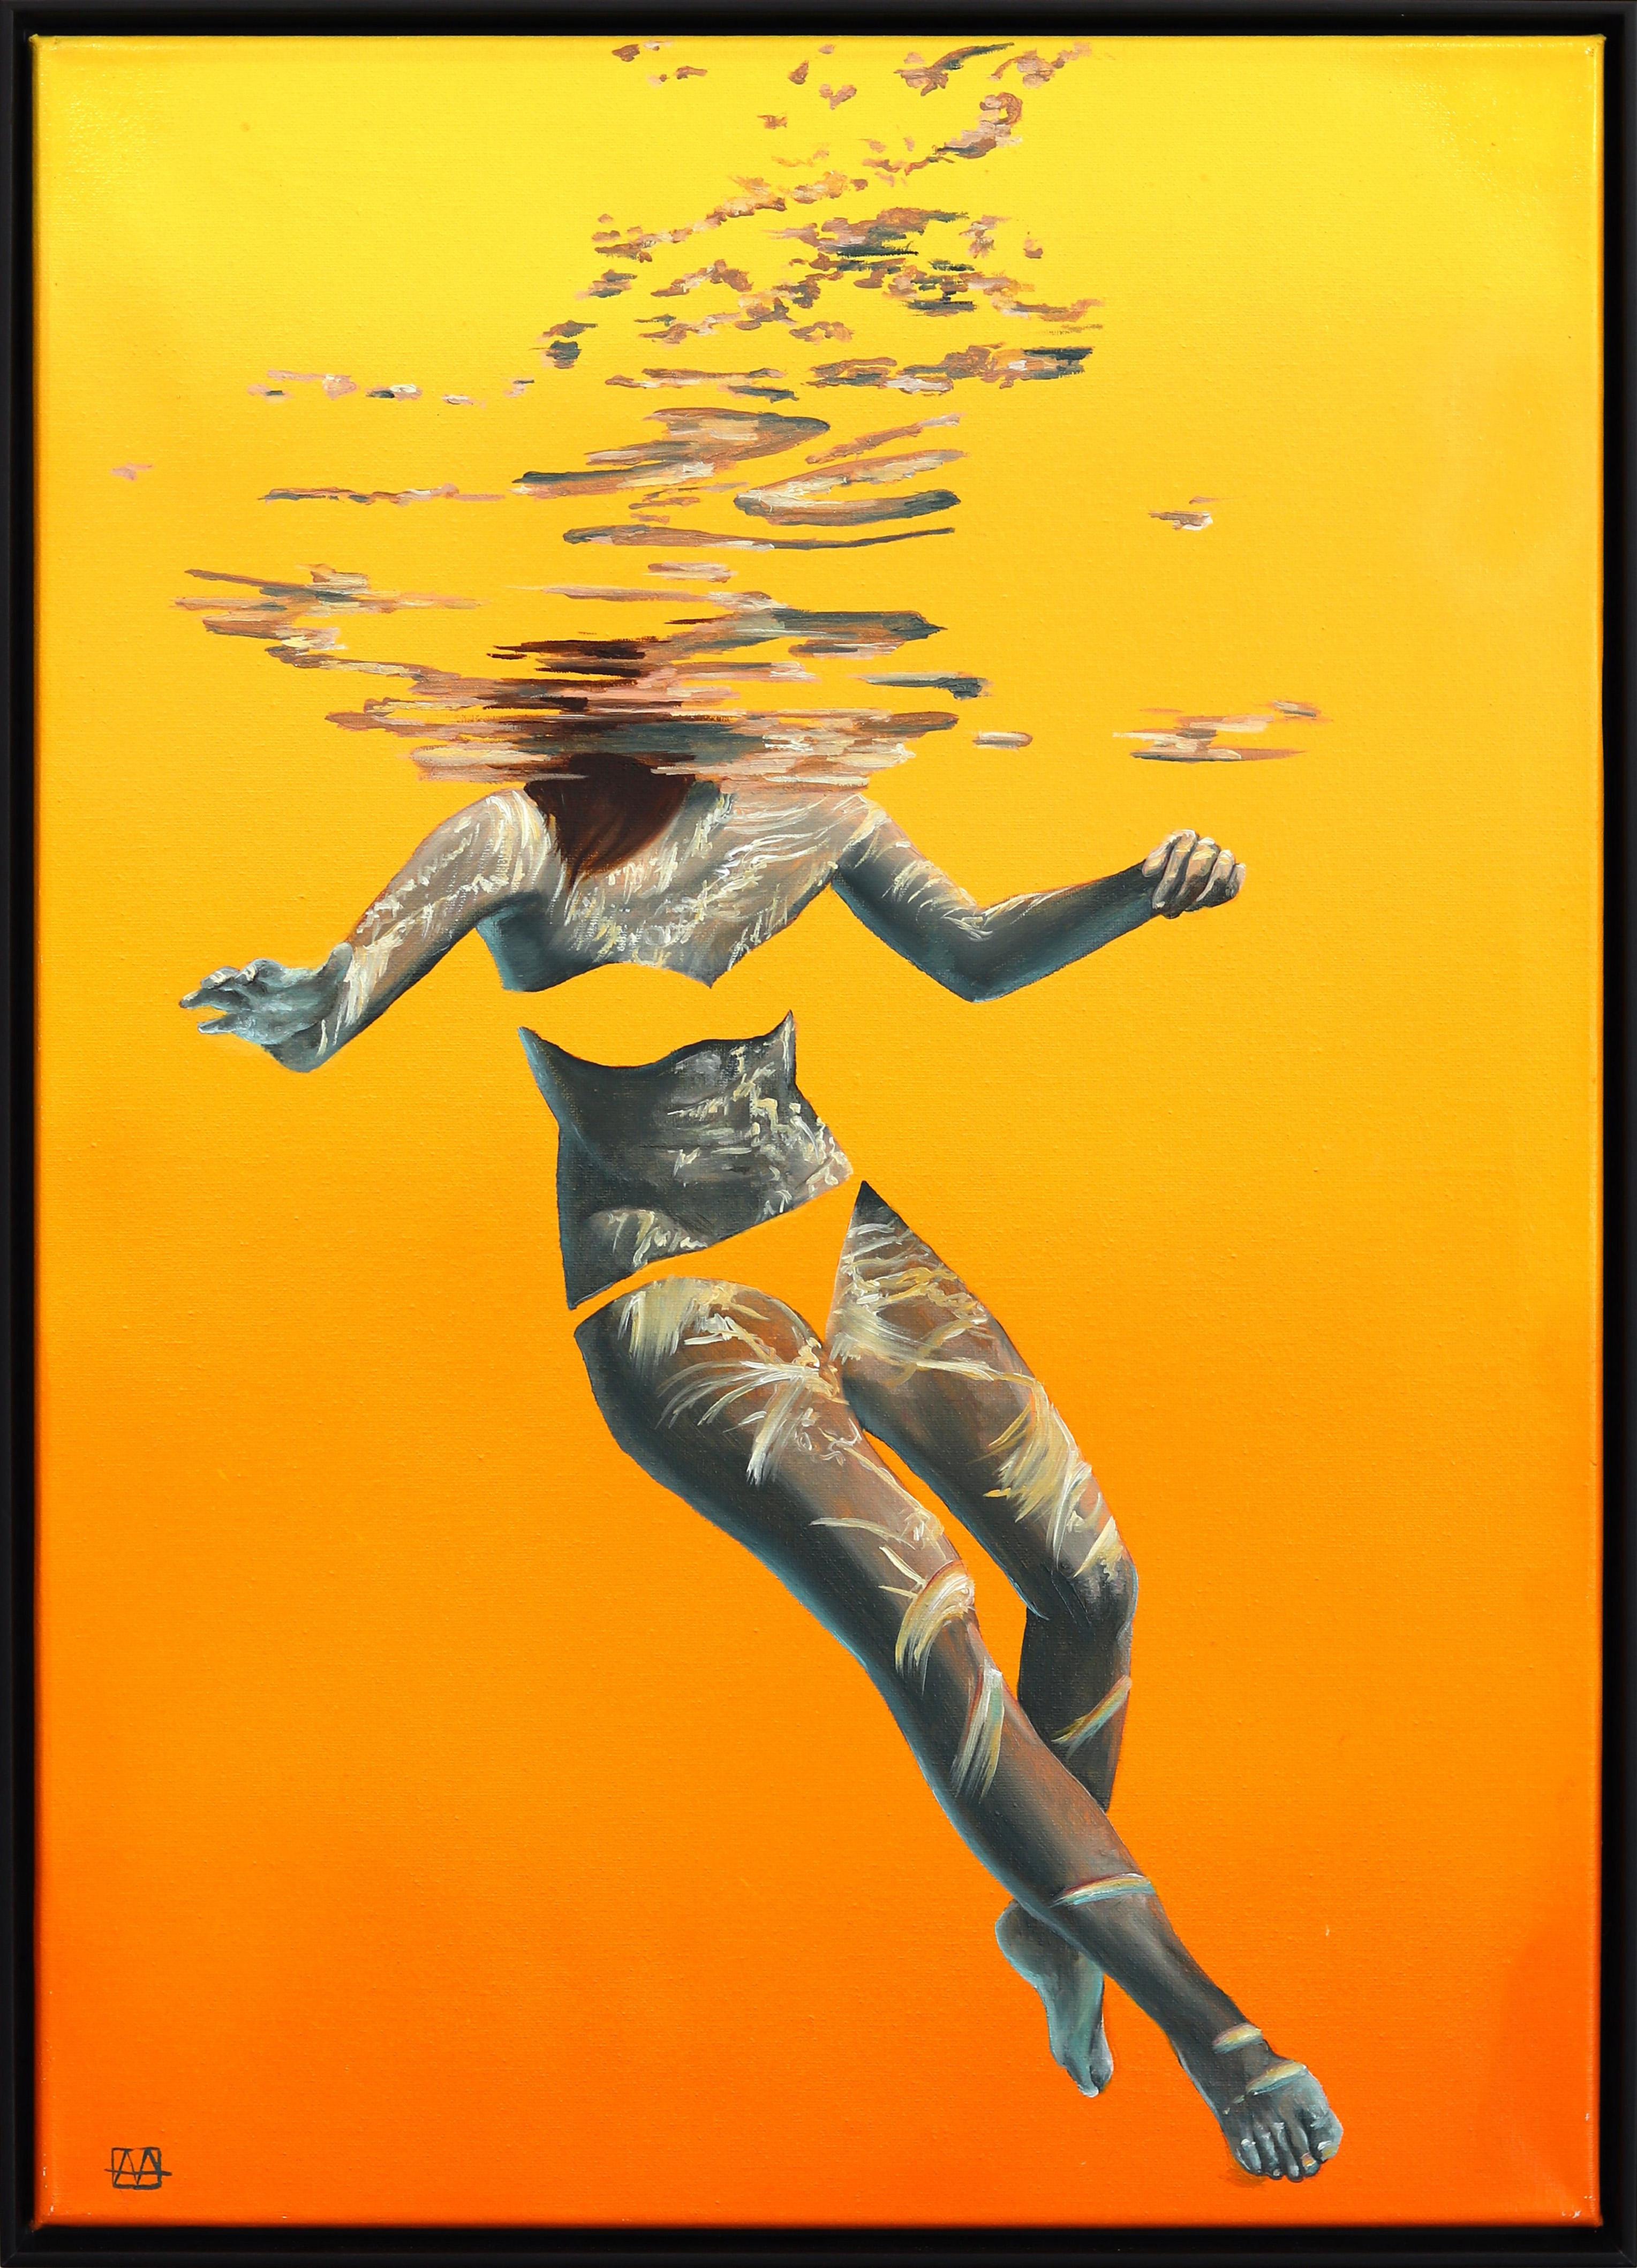 Portrait Painting Amanda Arrou-tea - Les mers de votre imagination (Orange)